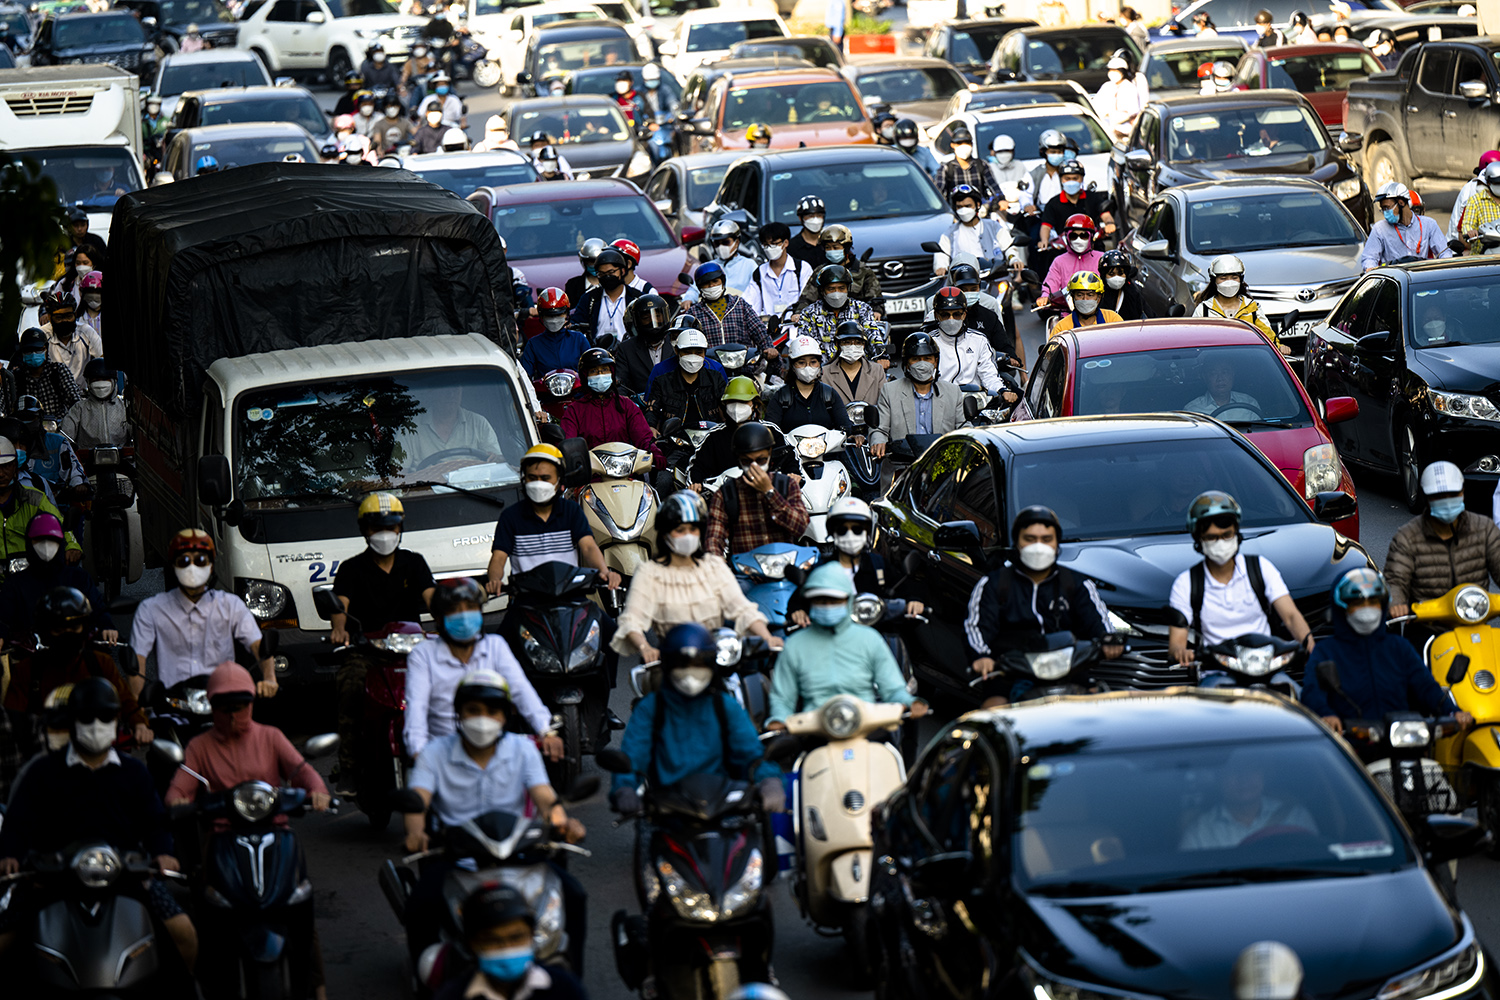 Hà Nội, TP.HCM lại tắc đường kinh hoàng sau nghỉ lễ, người dân chật vật tới nơi làm việc - 5